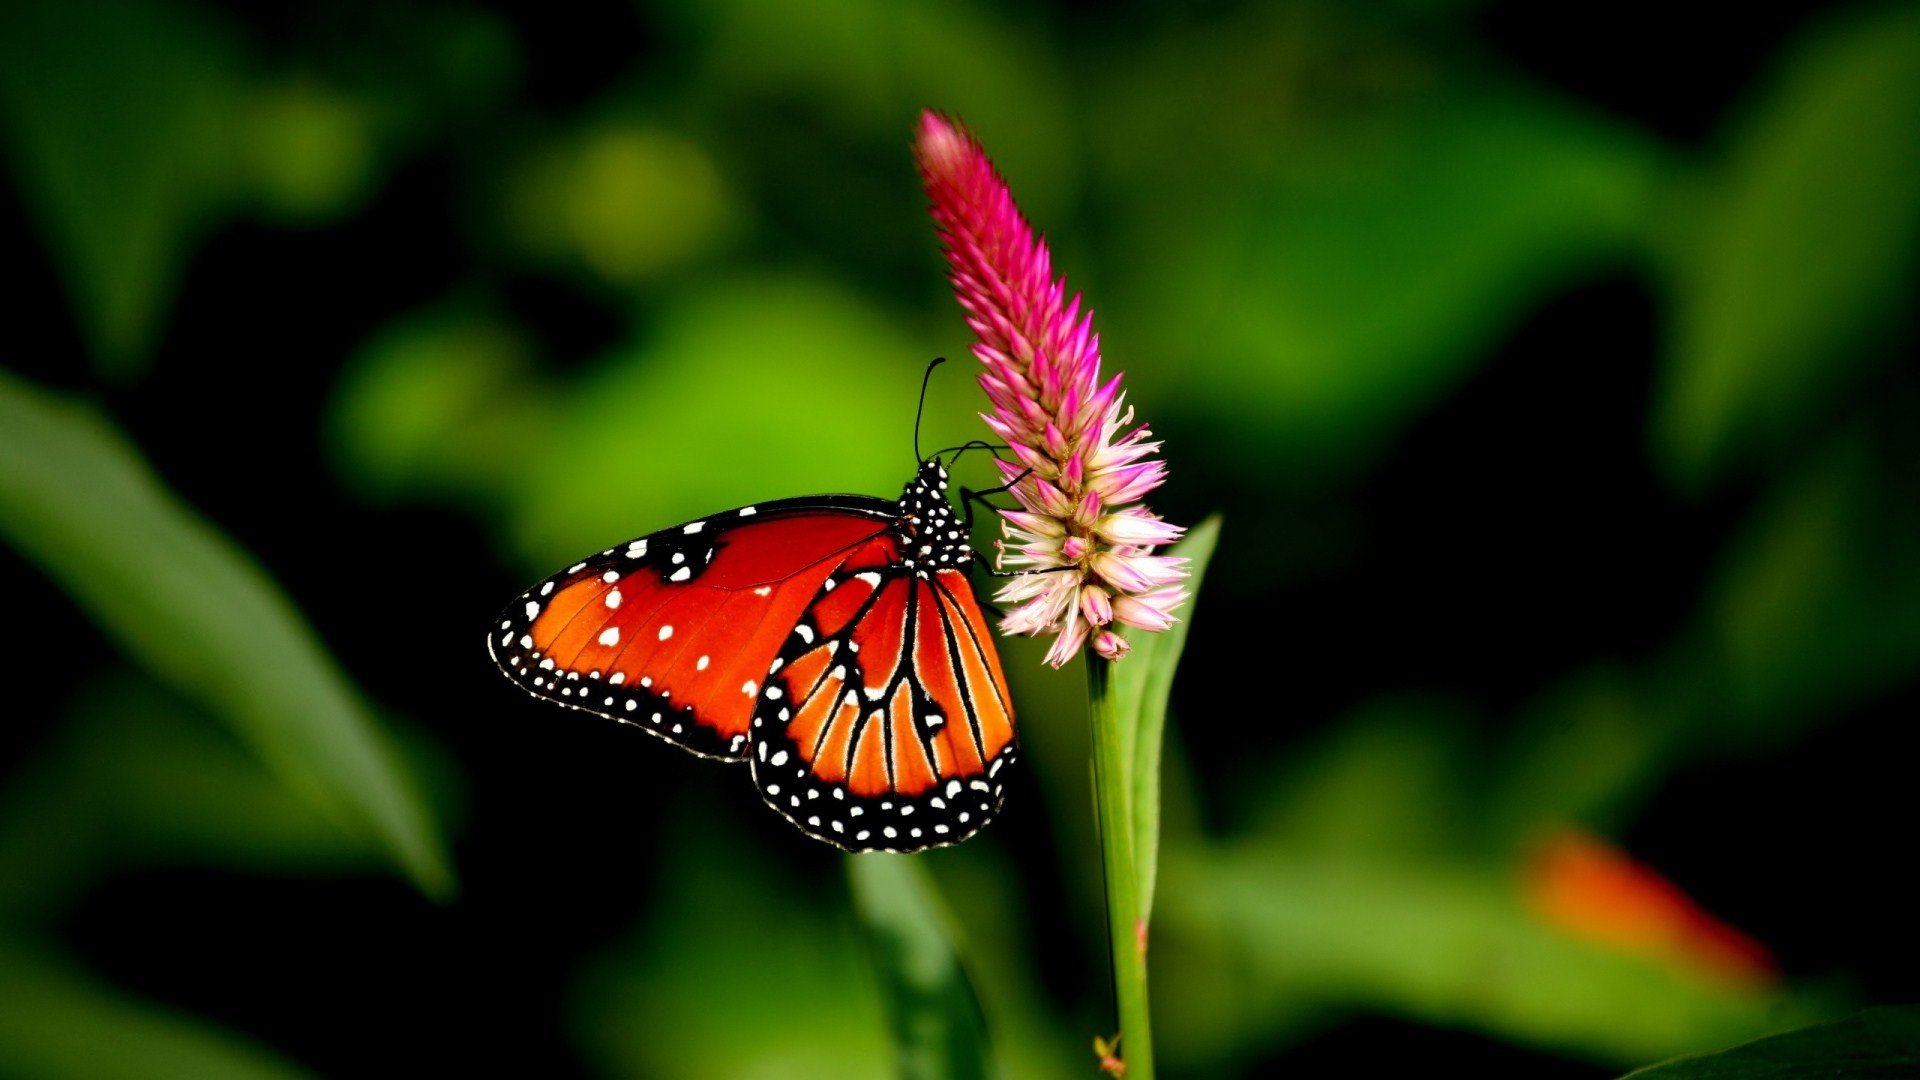 Butterfly: Hình ảnh về bướm luôn mang lại cảm giác mộc mạc, đẹp mắt và tinh tế. Hãy cùng chiêm ngưỡng những tác phẩm nghệ thuật về loài bướm với những màu sắc đầy sáng tạo và ấn tượng nhất. Điểm nhấn của bức ảnh là độ chi tiết tinh xảo và sự tương phản màu sắc đẹp mắt.